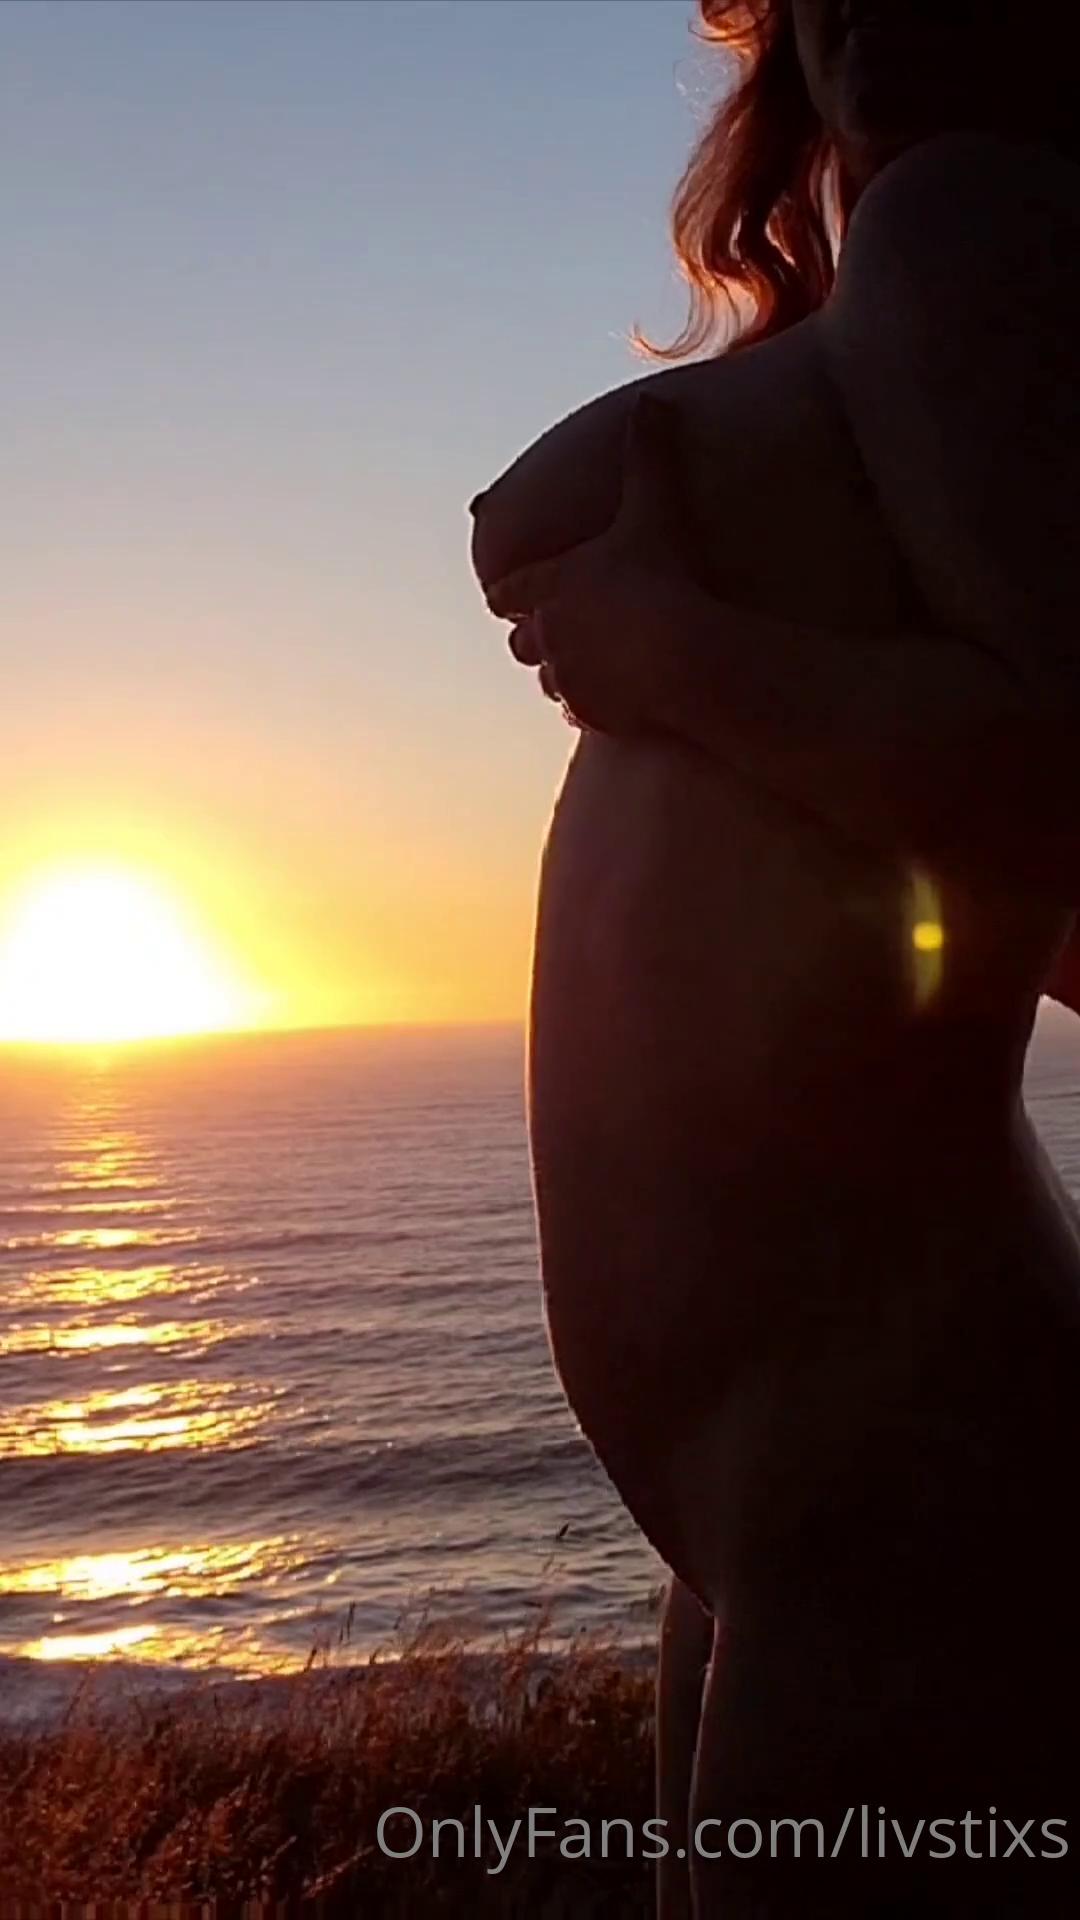 livstixs nude sunset onlyfans video leaked FHHGEJ